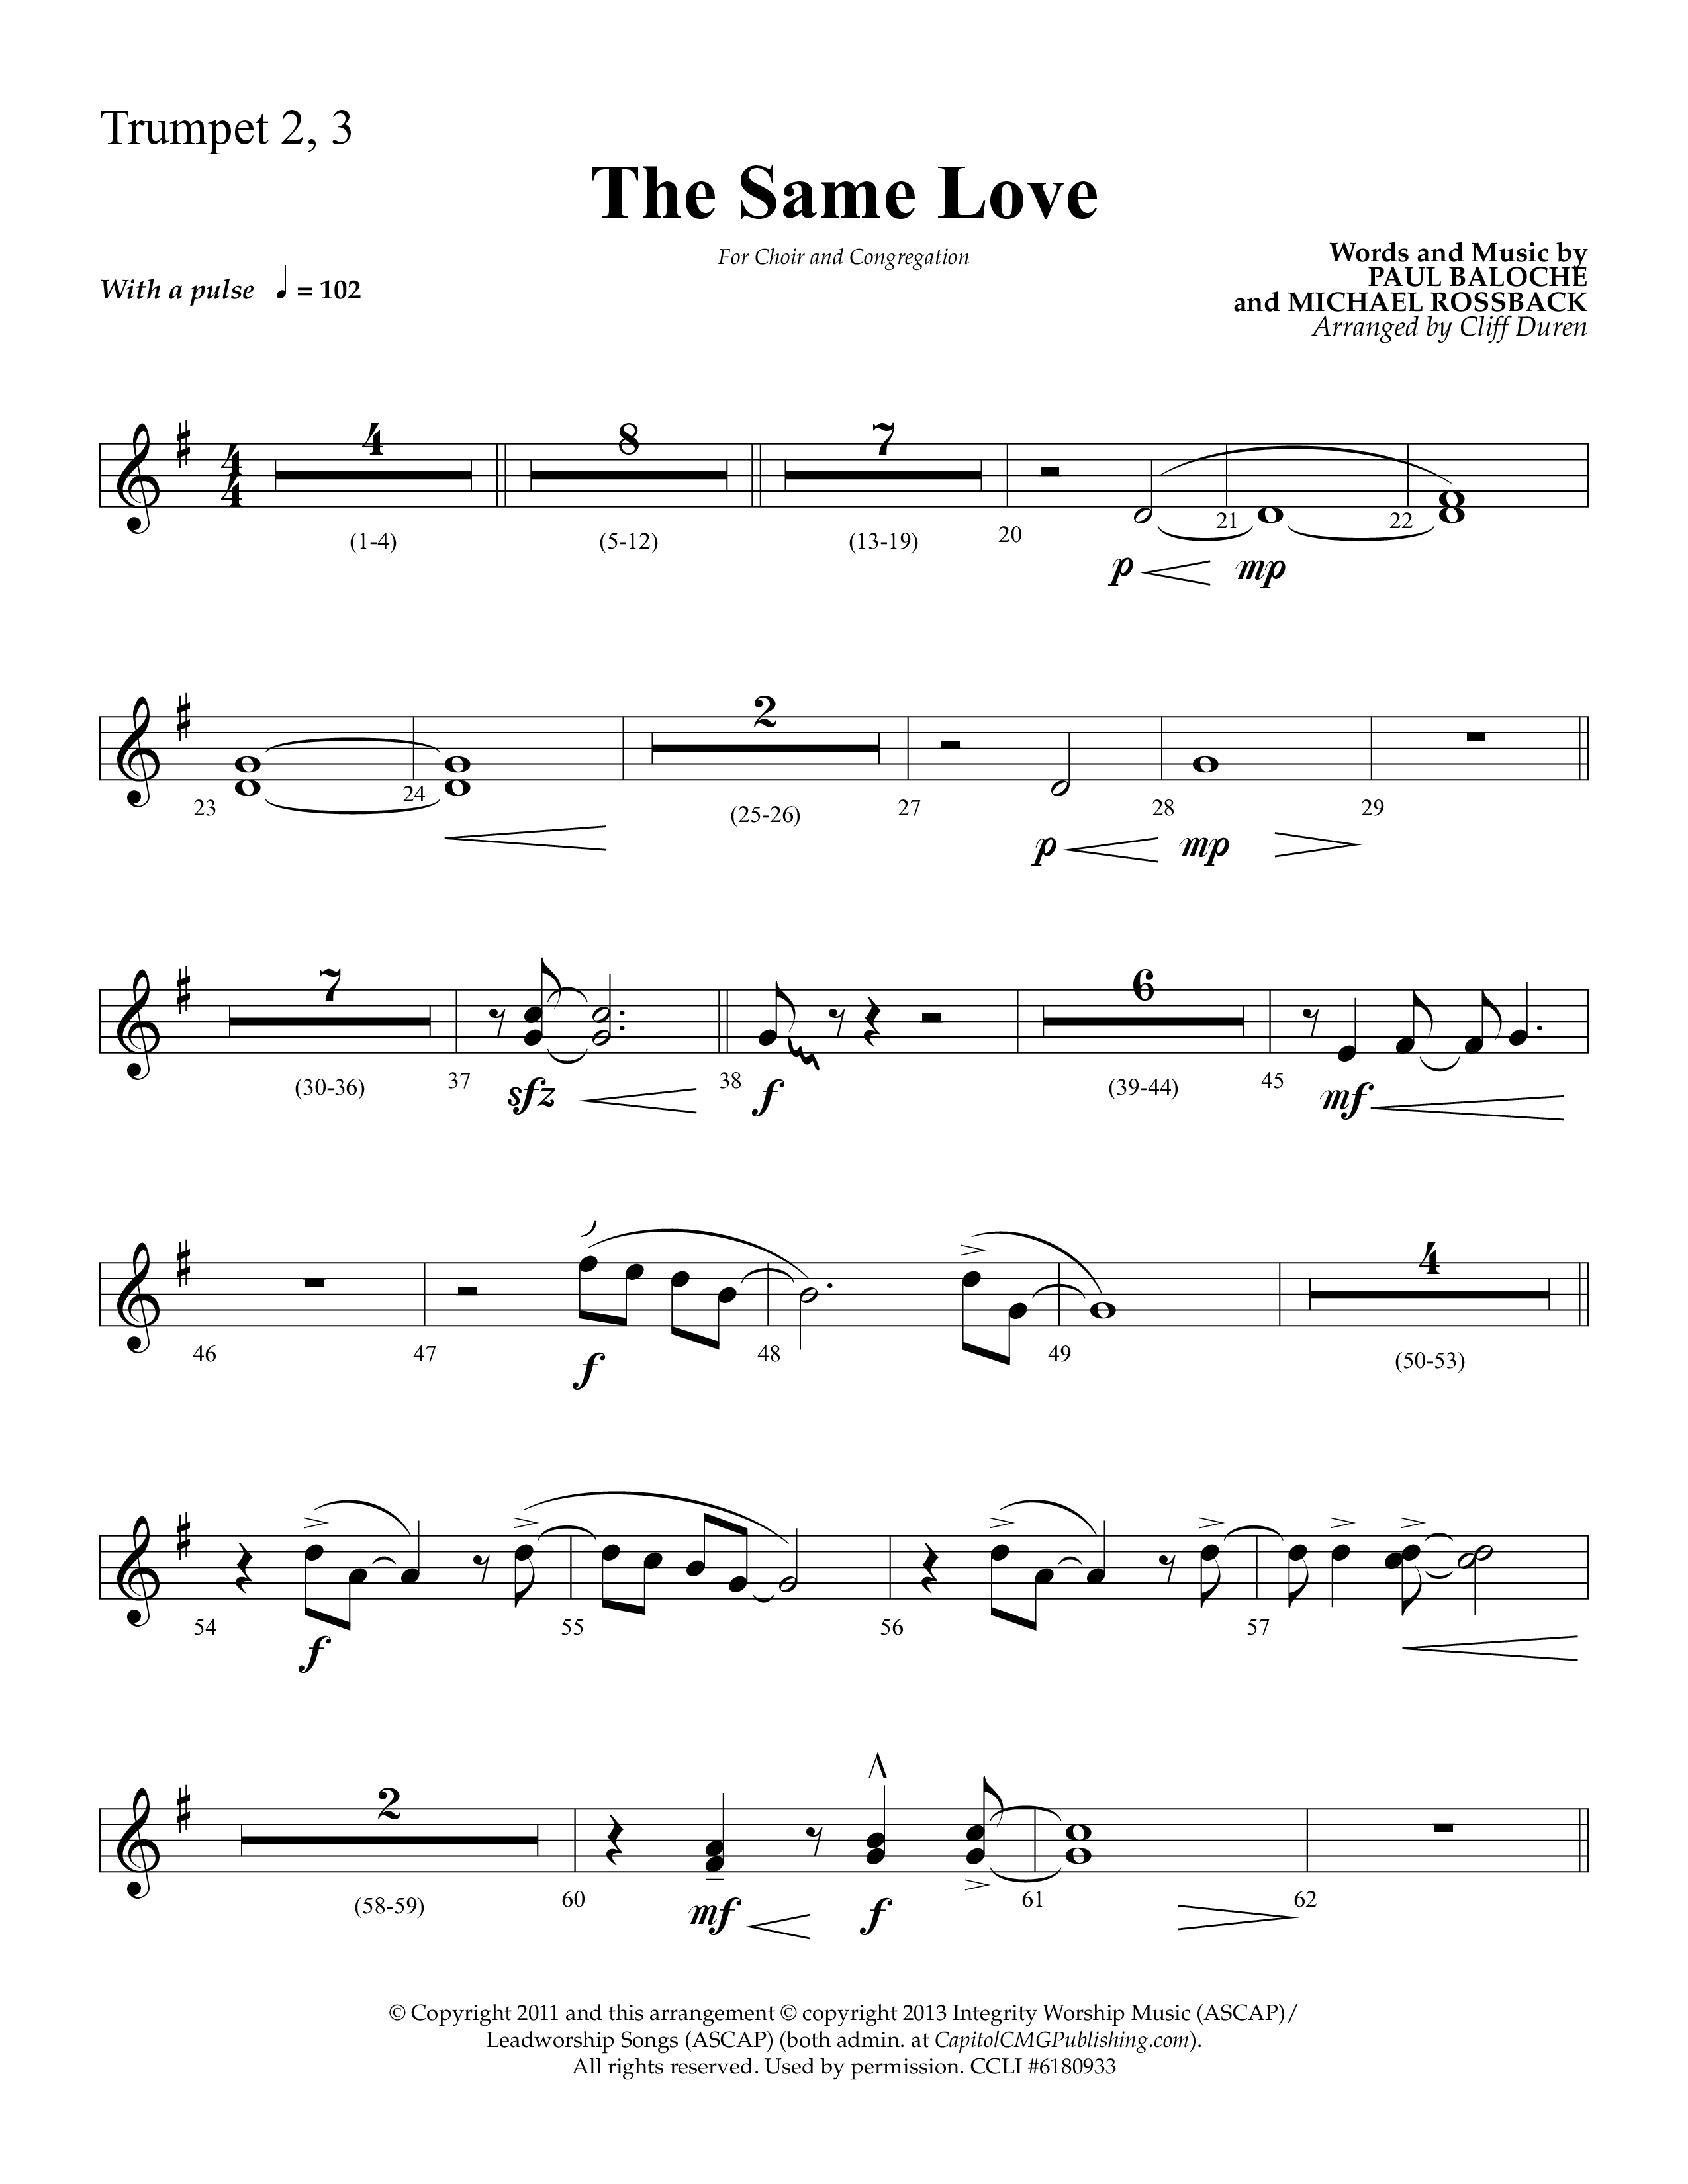 The Same Love (Choral Anthem SATB) Trumpet 2/3 (Lifeway Choral / Arr. Cliff Duren)